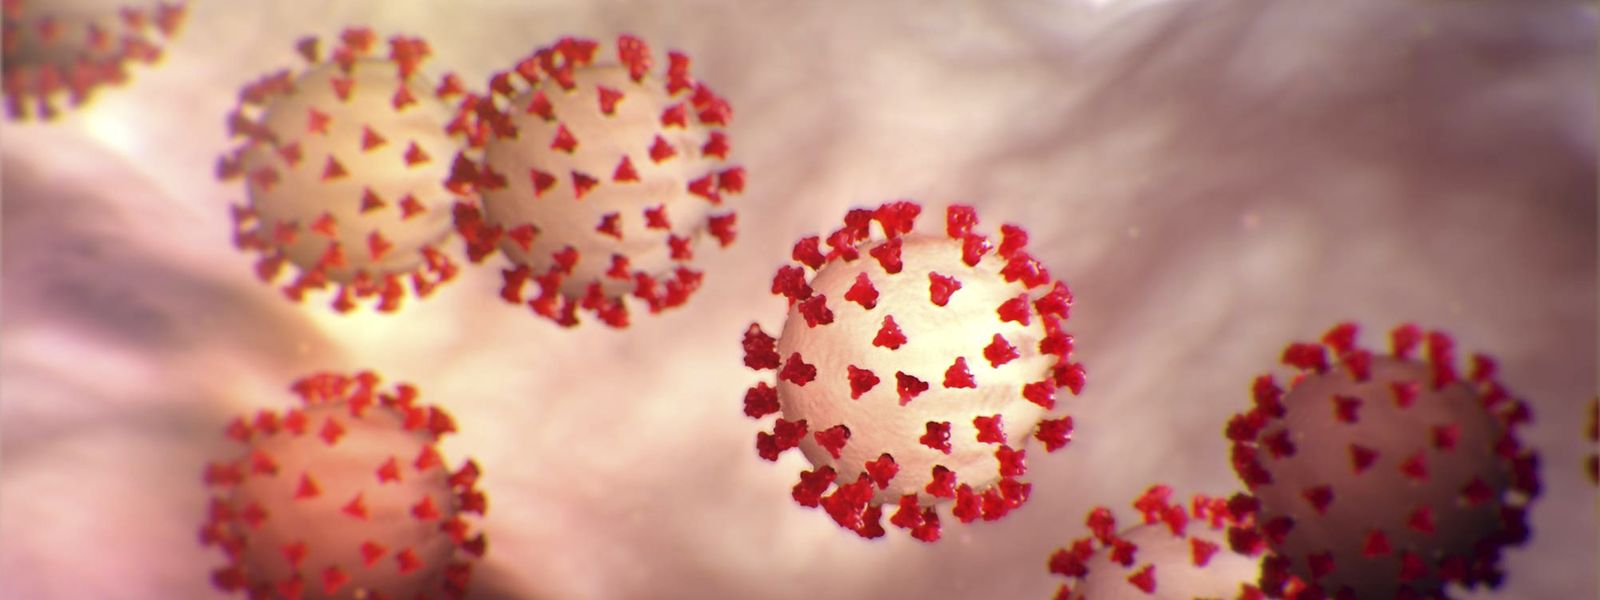 Plusieurs pistes de traitements sont à l'étude contre le nouveau coronavirus qui a émergé en Chine et pour lequel aucune thérapie n'a encore fait ses preuves.